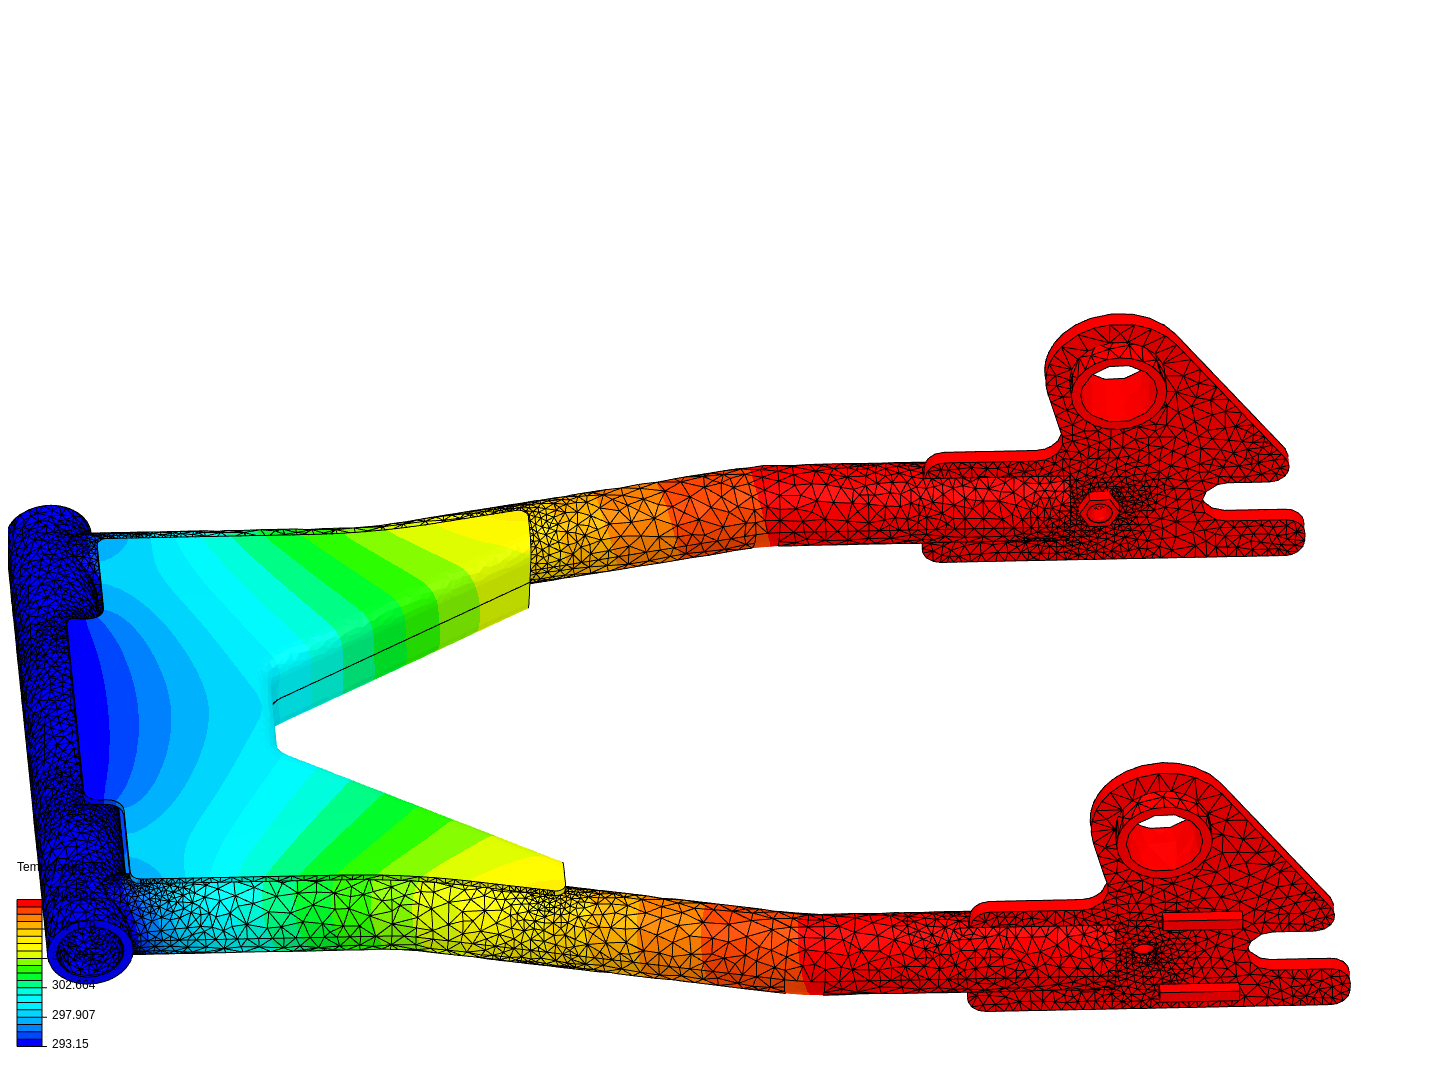 thermal analysis image